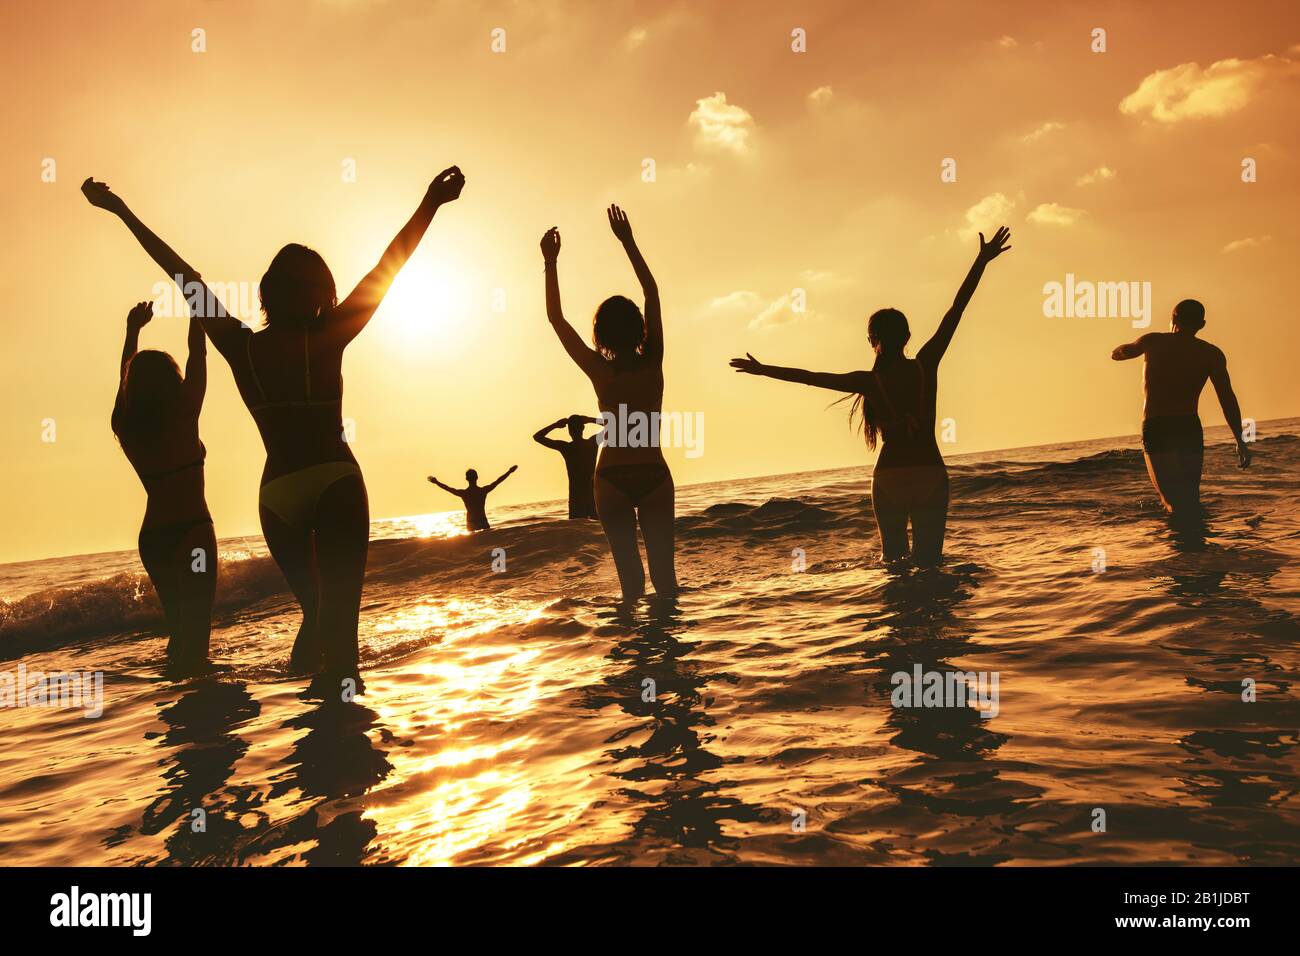 Un grand groupe de personnes heureux se tient à la plage de la mer au coucher du soleil. Silhouettes avec bras relevés Banque D'Images